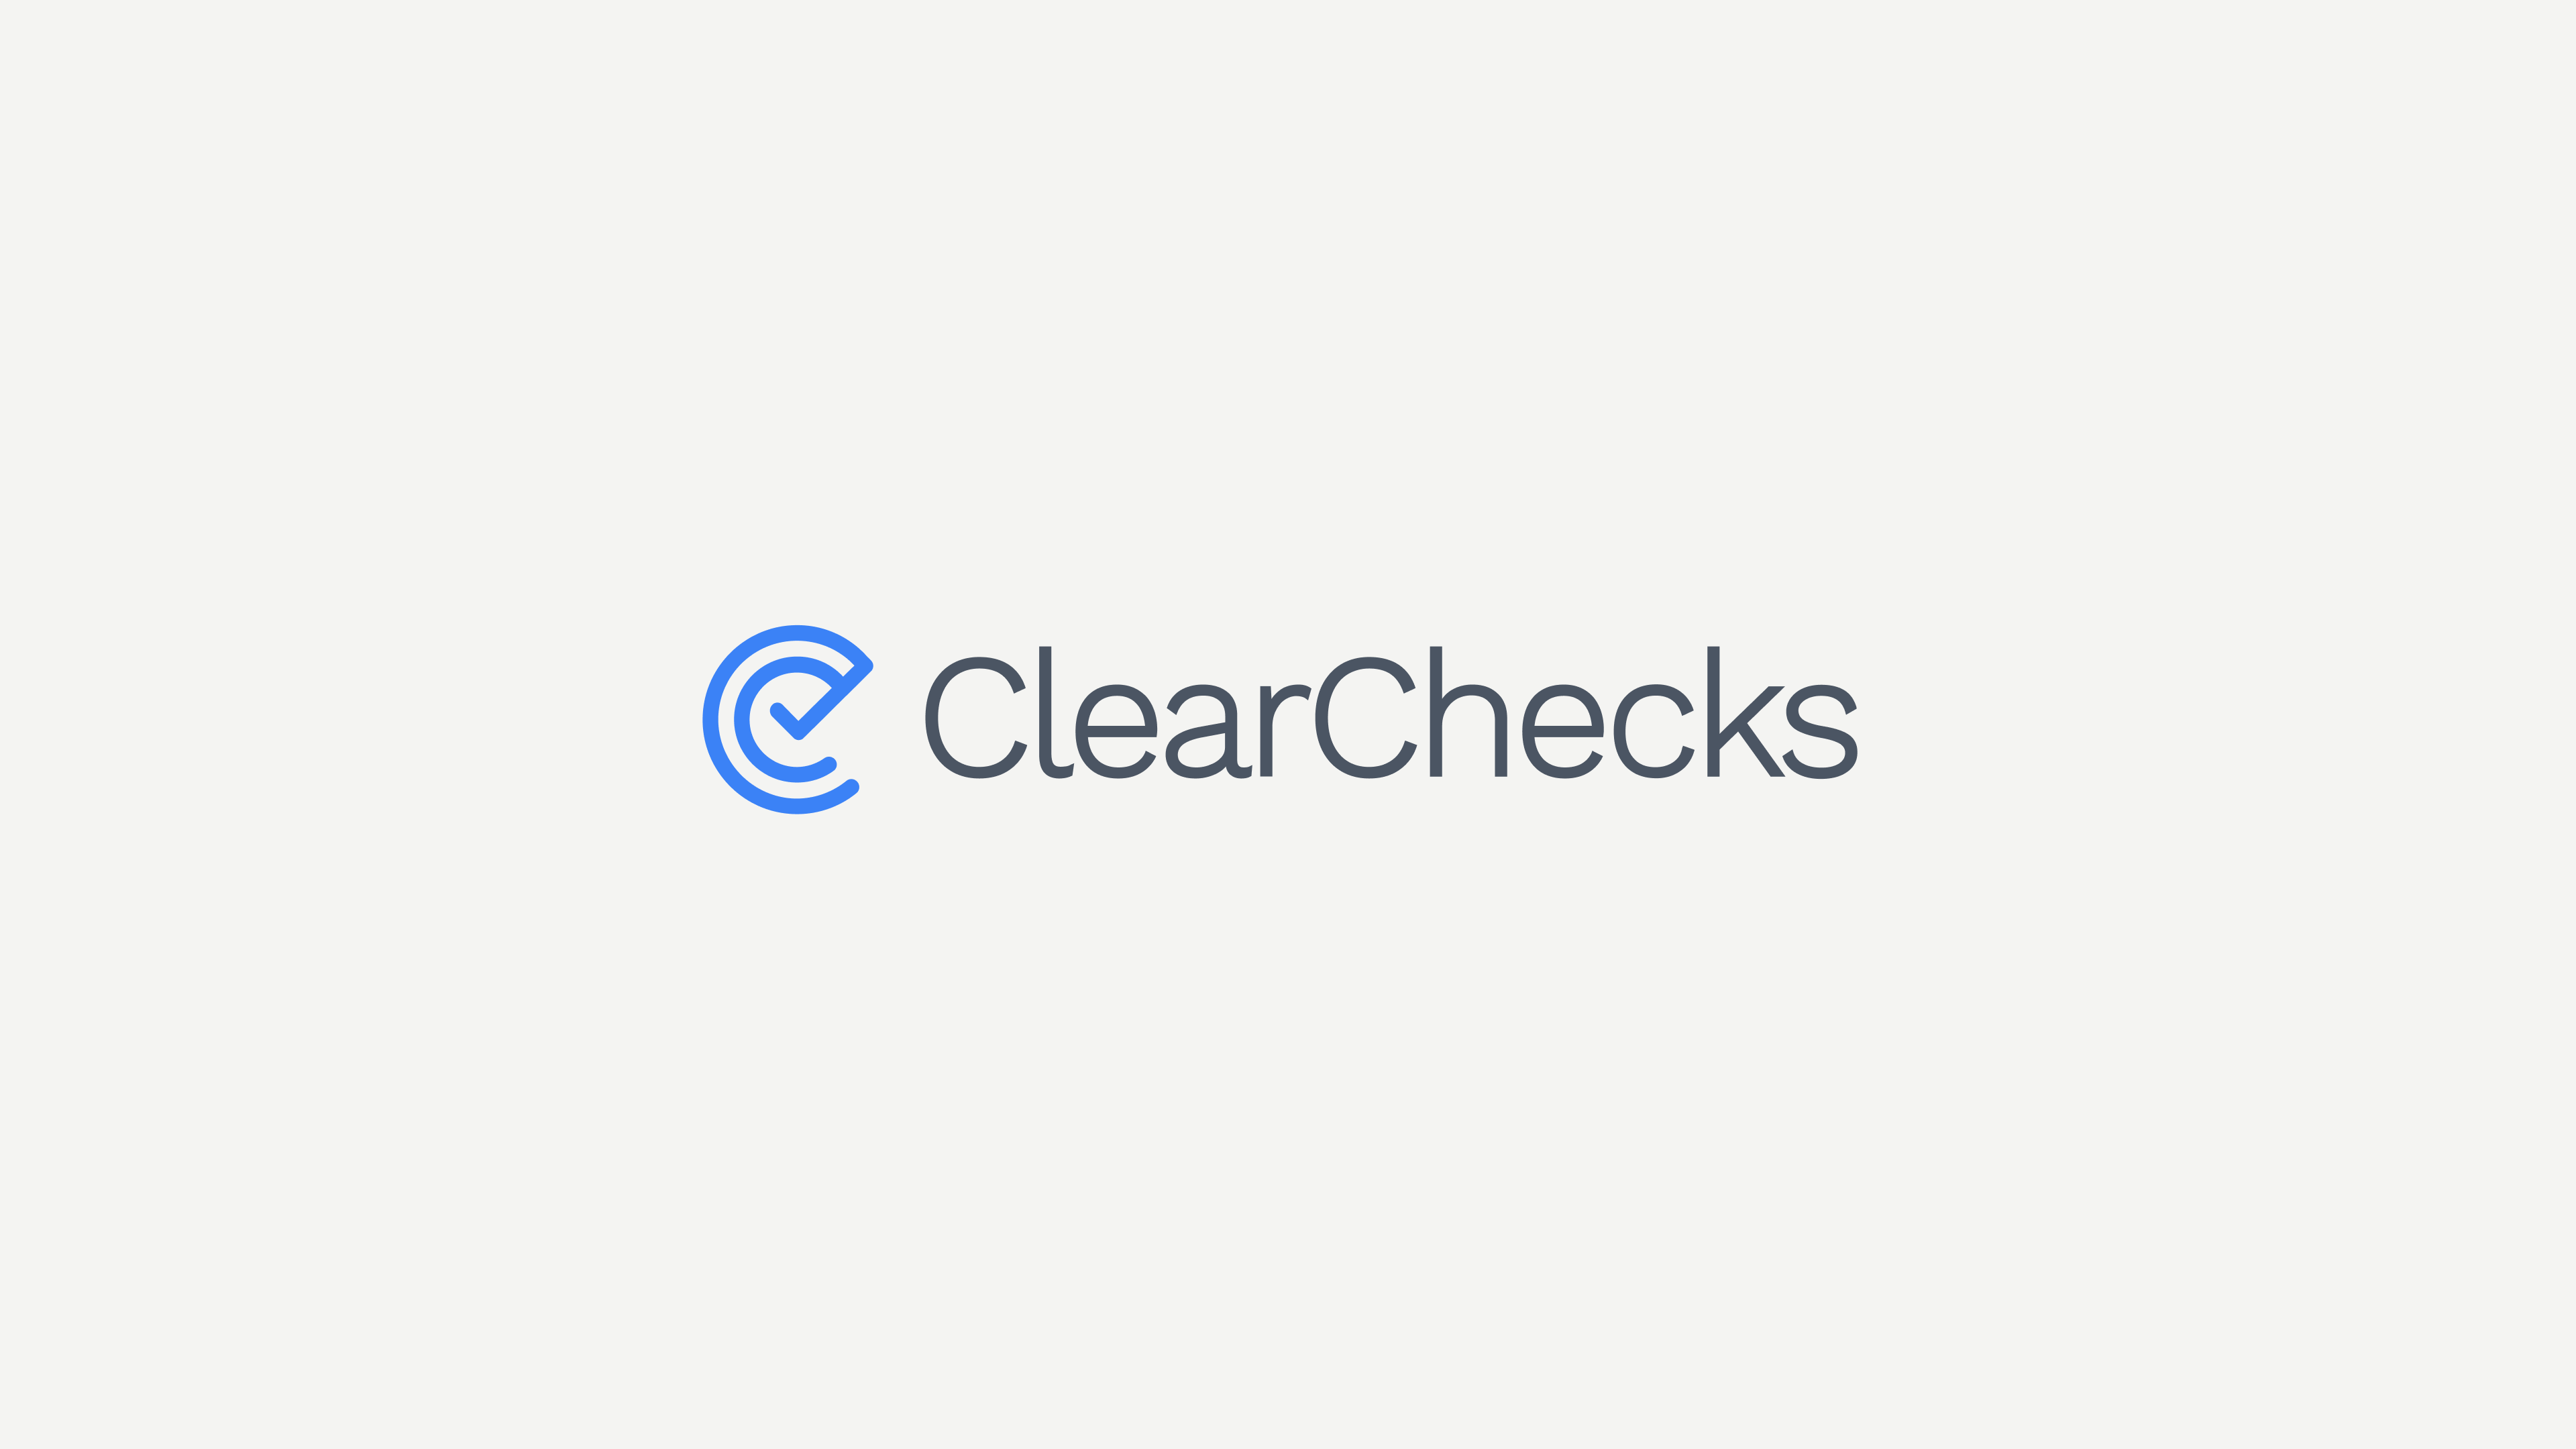 Clearchecks